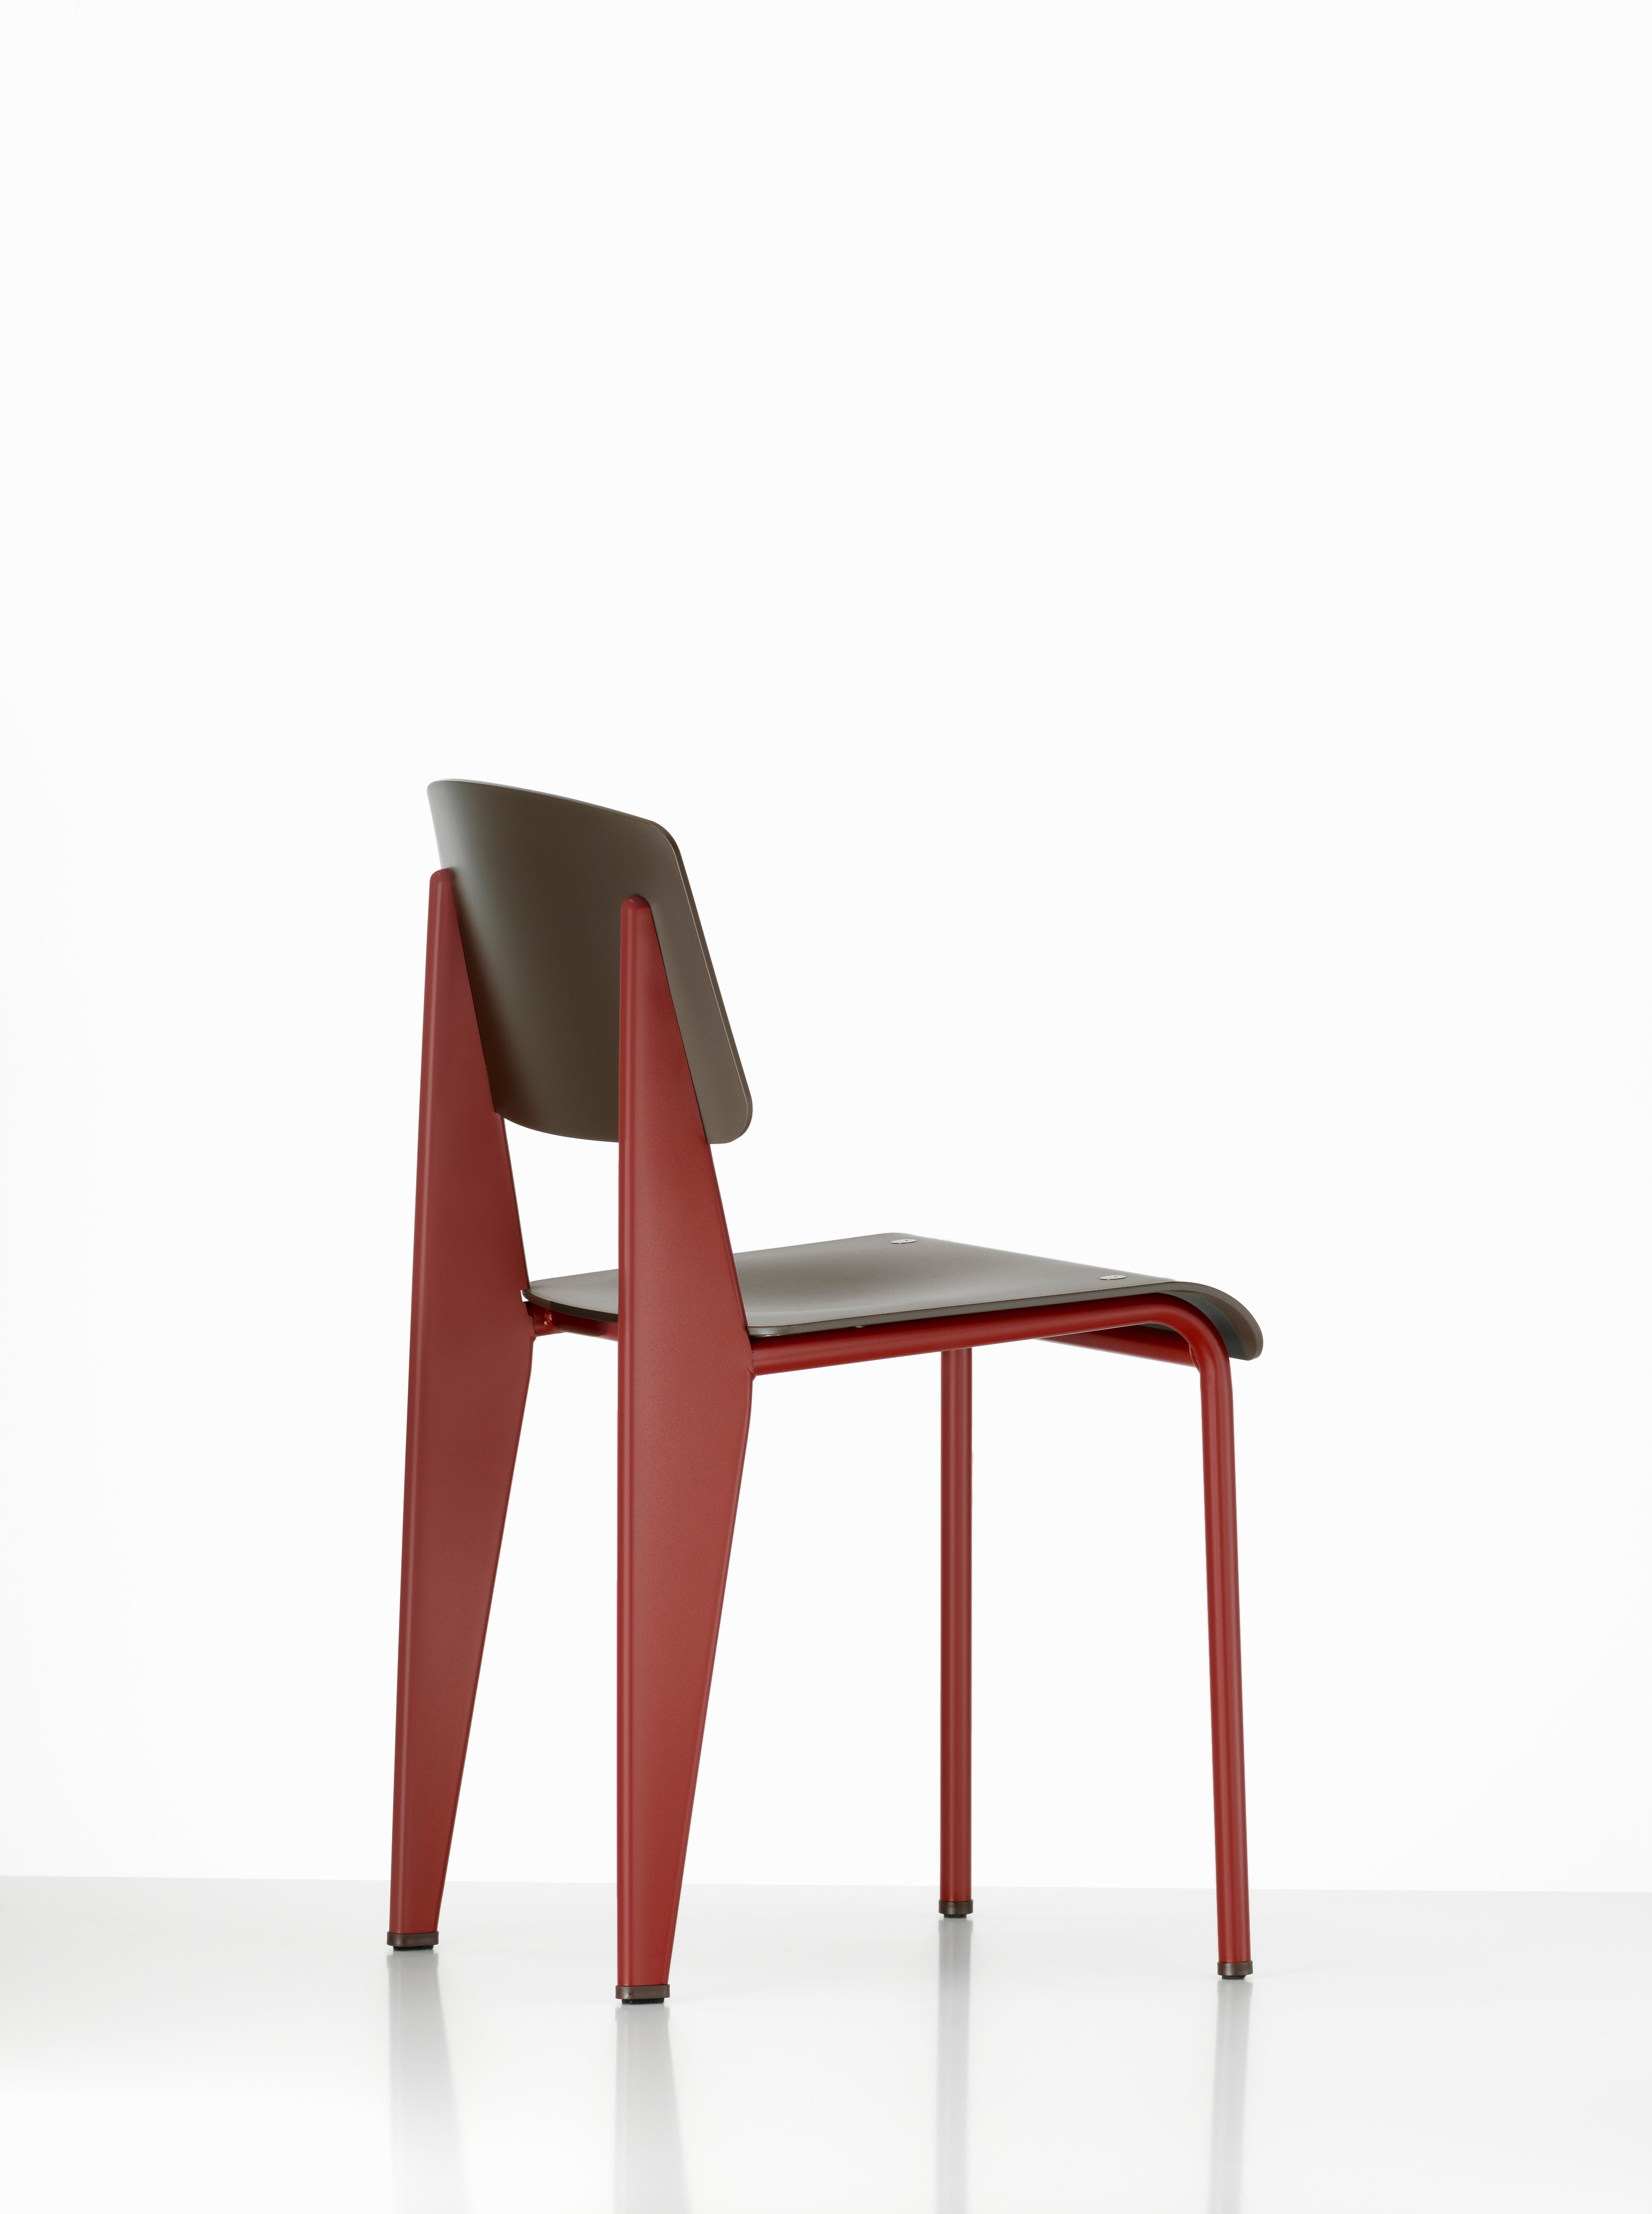 6 Stühle Jean Prouvé Standard SP in Teak Brown und Rot für Vitra 8